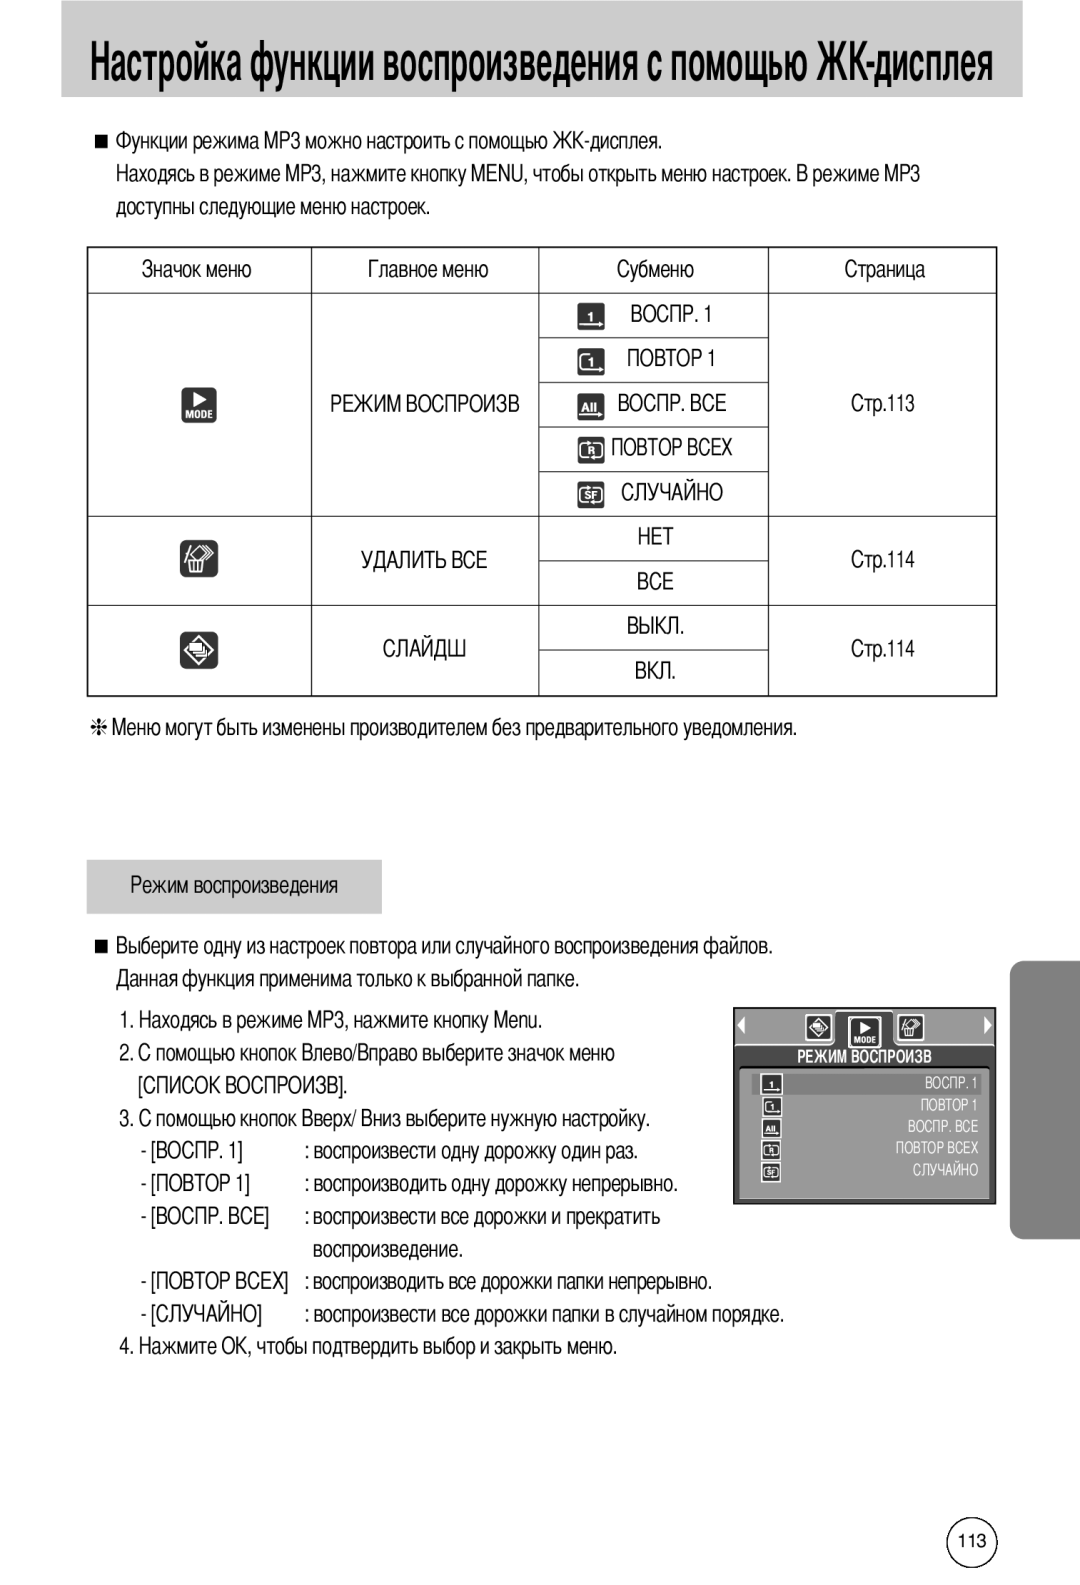 Samsung EC-I50ZZRBA/FR manual ункции воспроизведения с помощью-дисплея, доступны следующие меню настроек, 113 114 114 